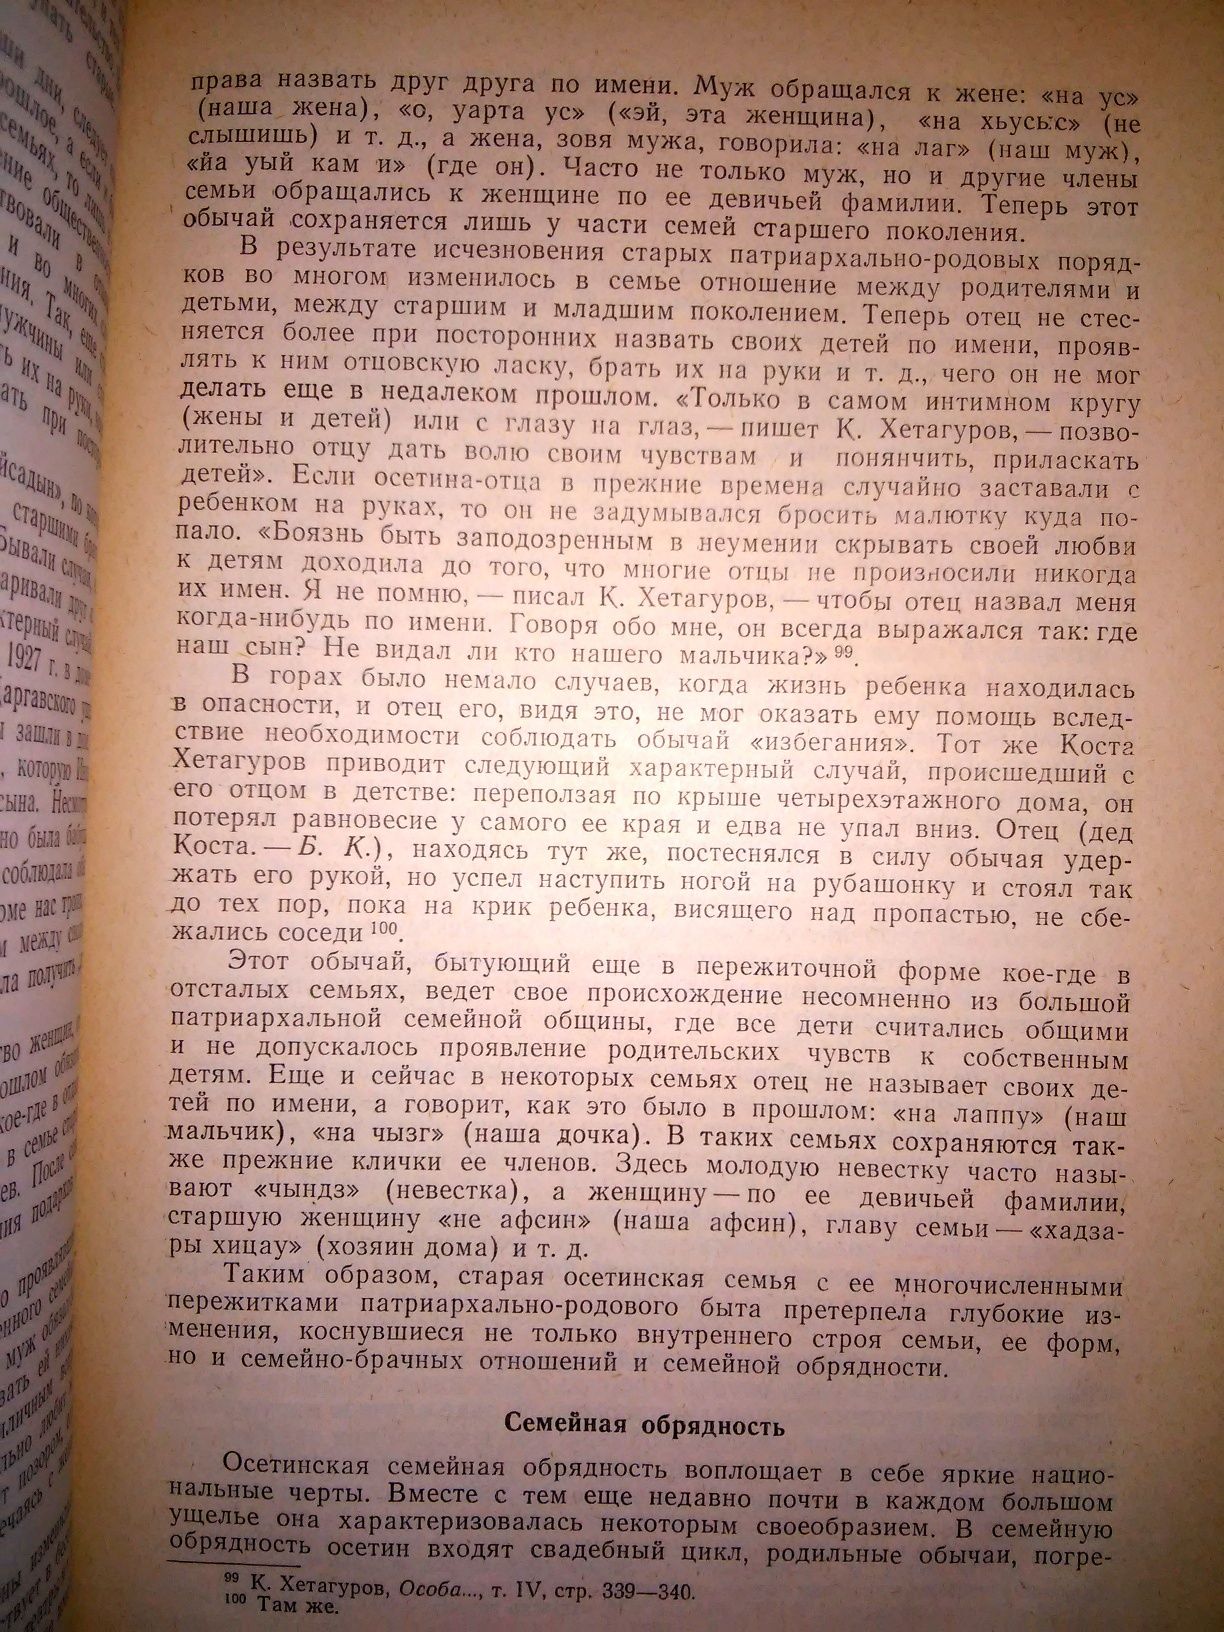 Калоев Осетины 1967р.